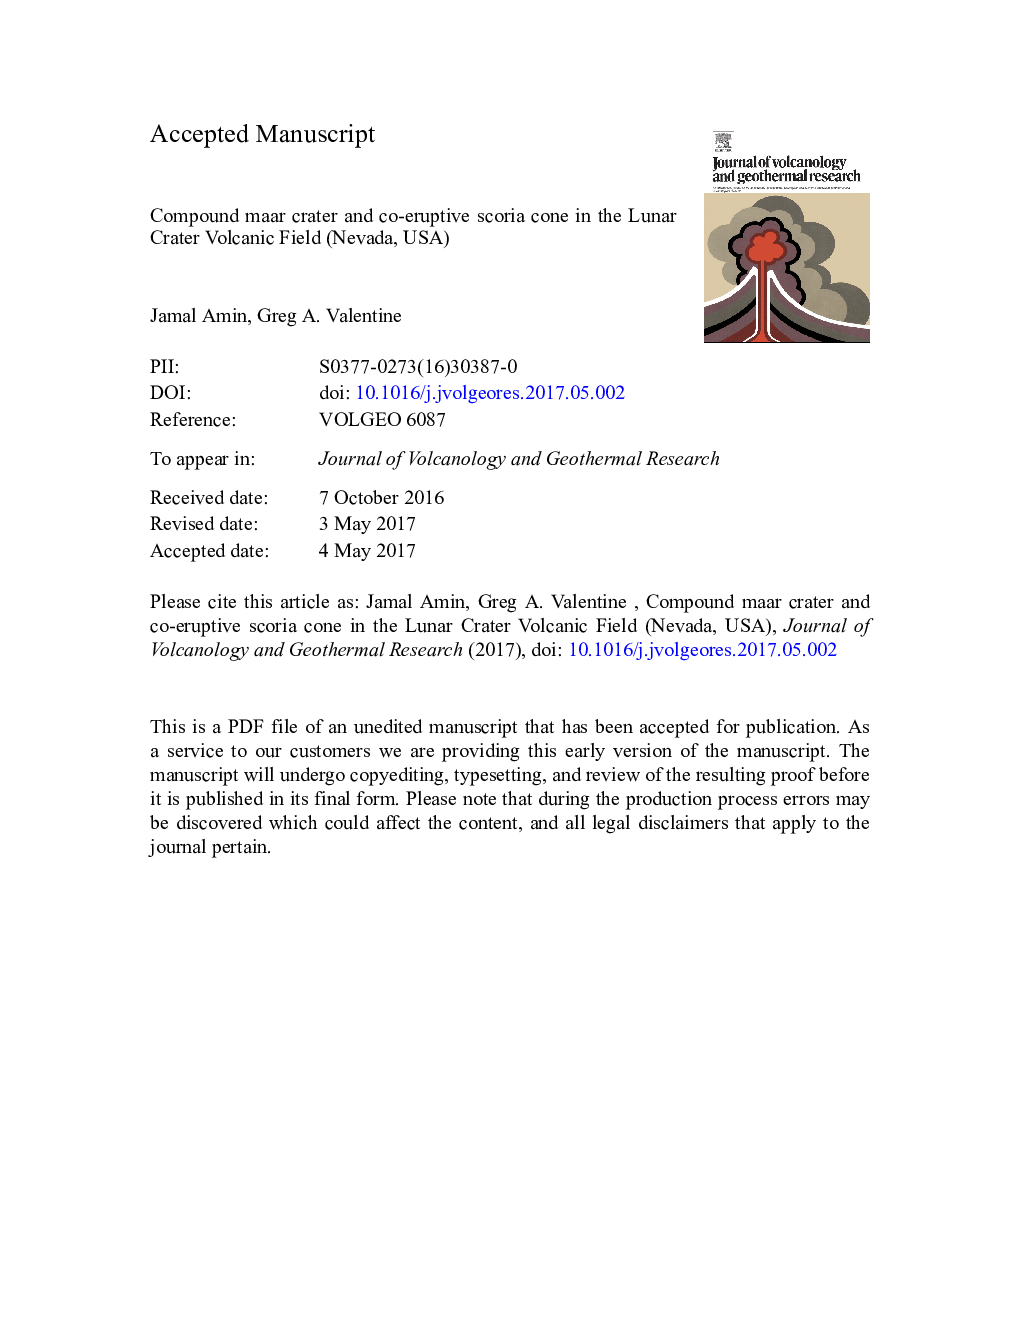 مخروط سیلندر مور و مخروطی اسکوریا فوران کننده در میدان آتشفشانی دهانه قمری (نوادا، ایالات متحده آمریکا)